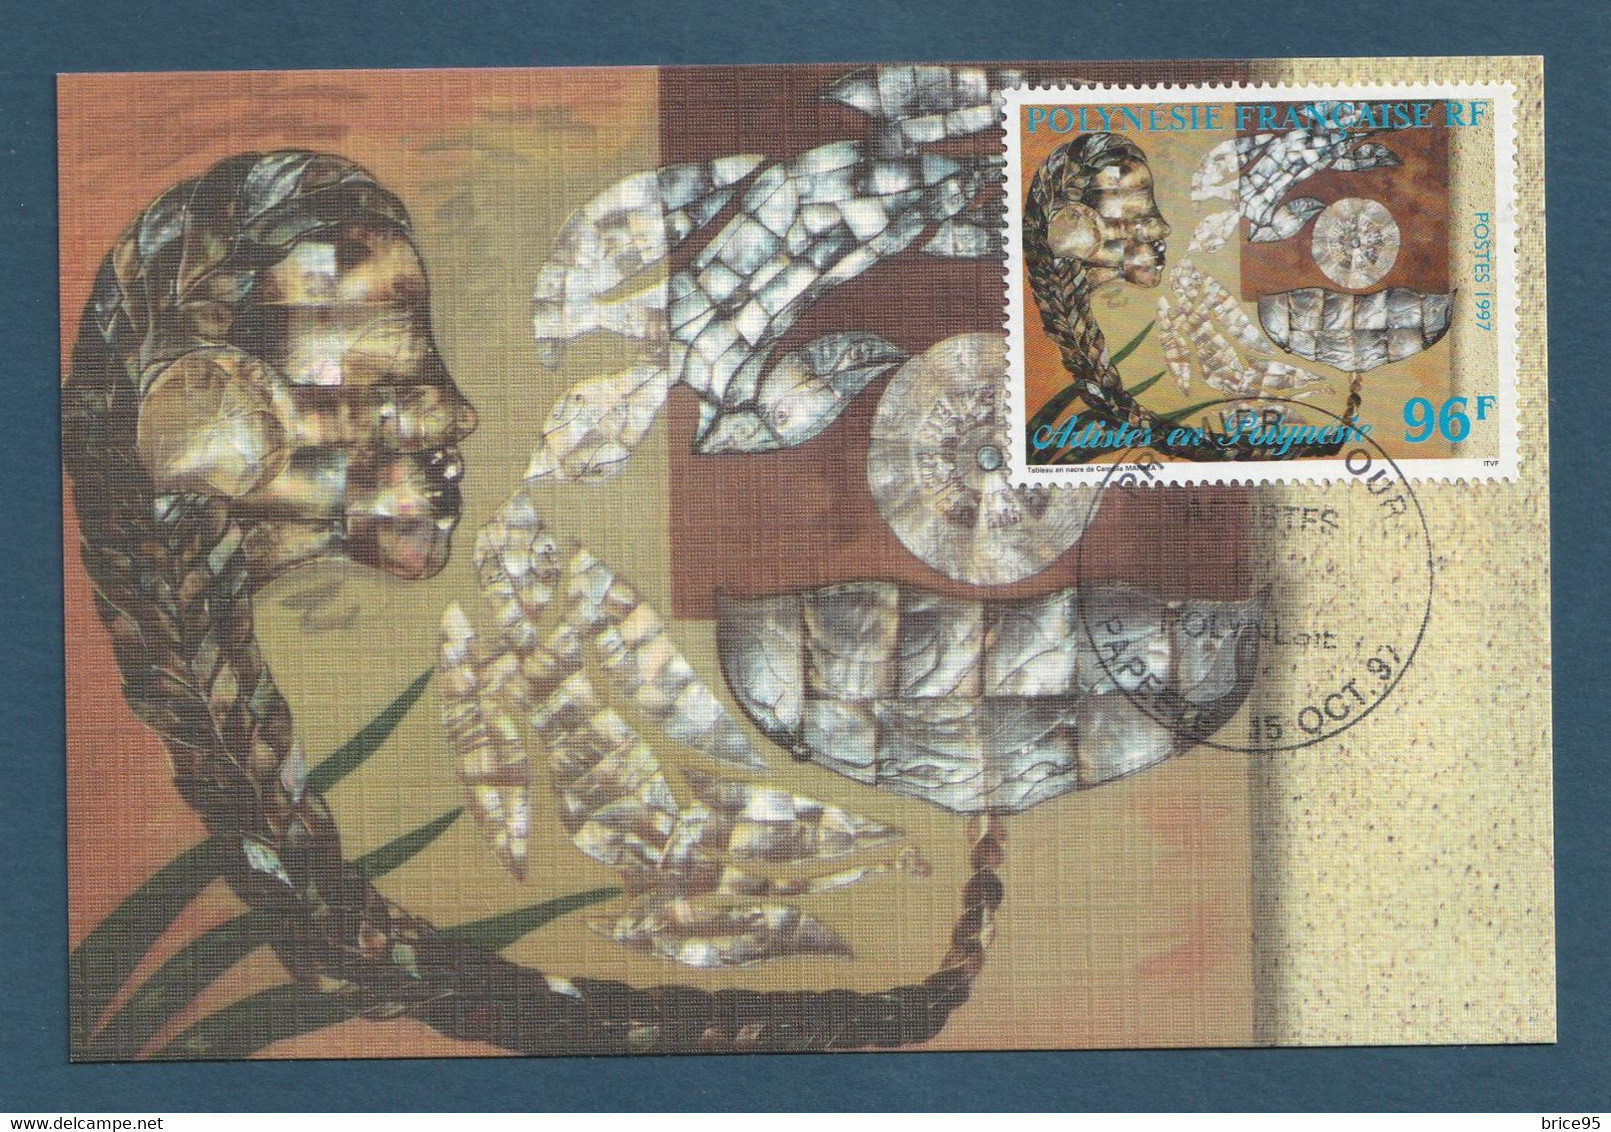 ⭐ Polynésie Française - Carte Maximum - Premier Jour - FDC - Artistes Peintres En Polynésie - 1997 ⭐ - Cartes-maximum